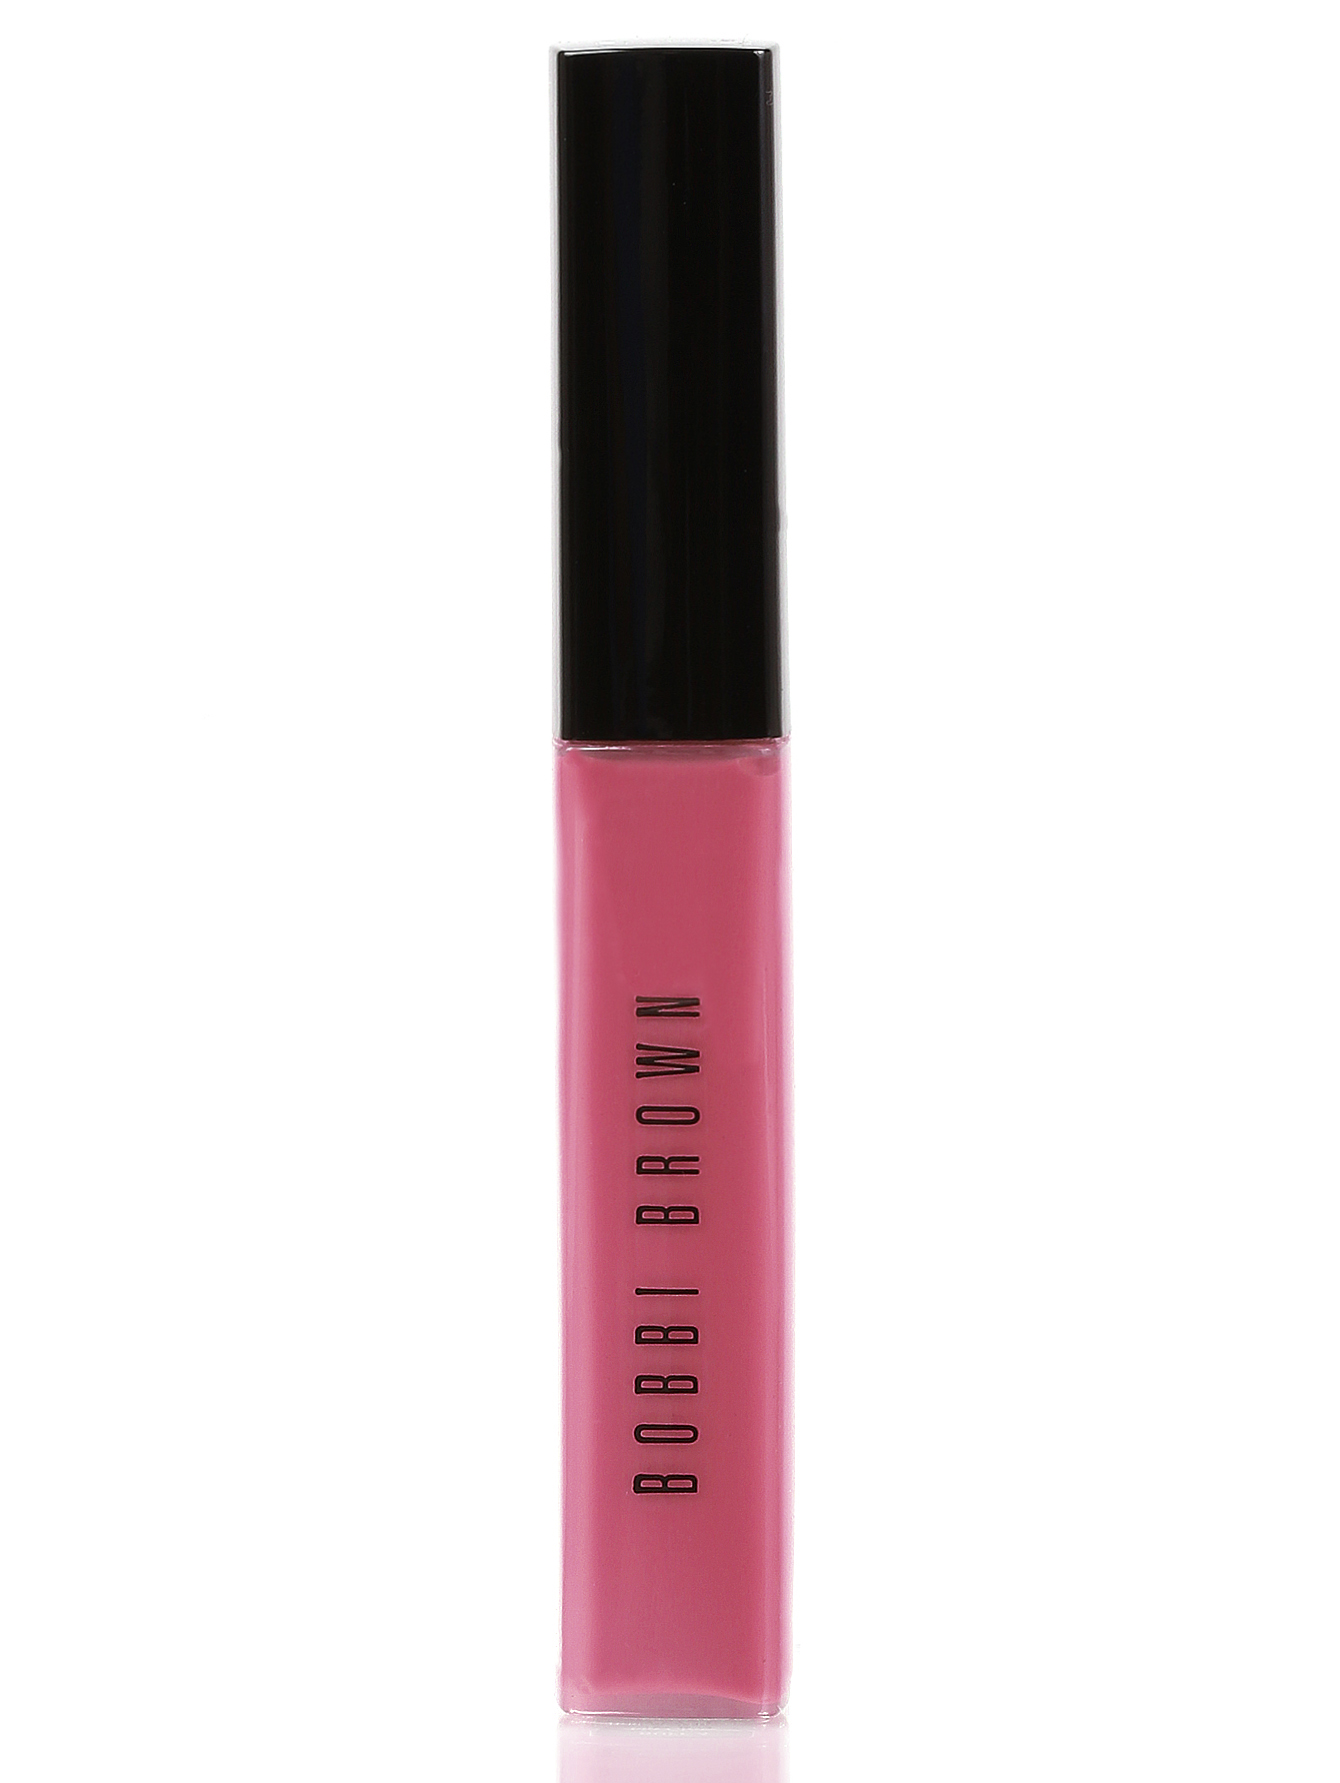 Блеск для губ - Pink Raspberry, Rich Color Gloss - Общий вид